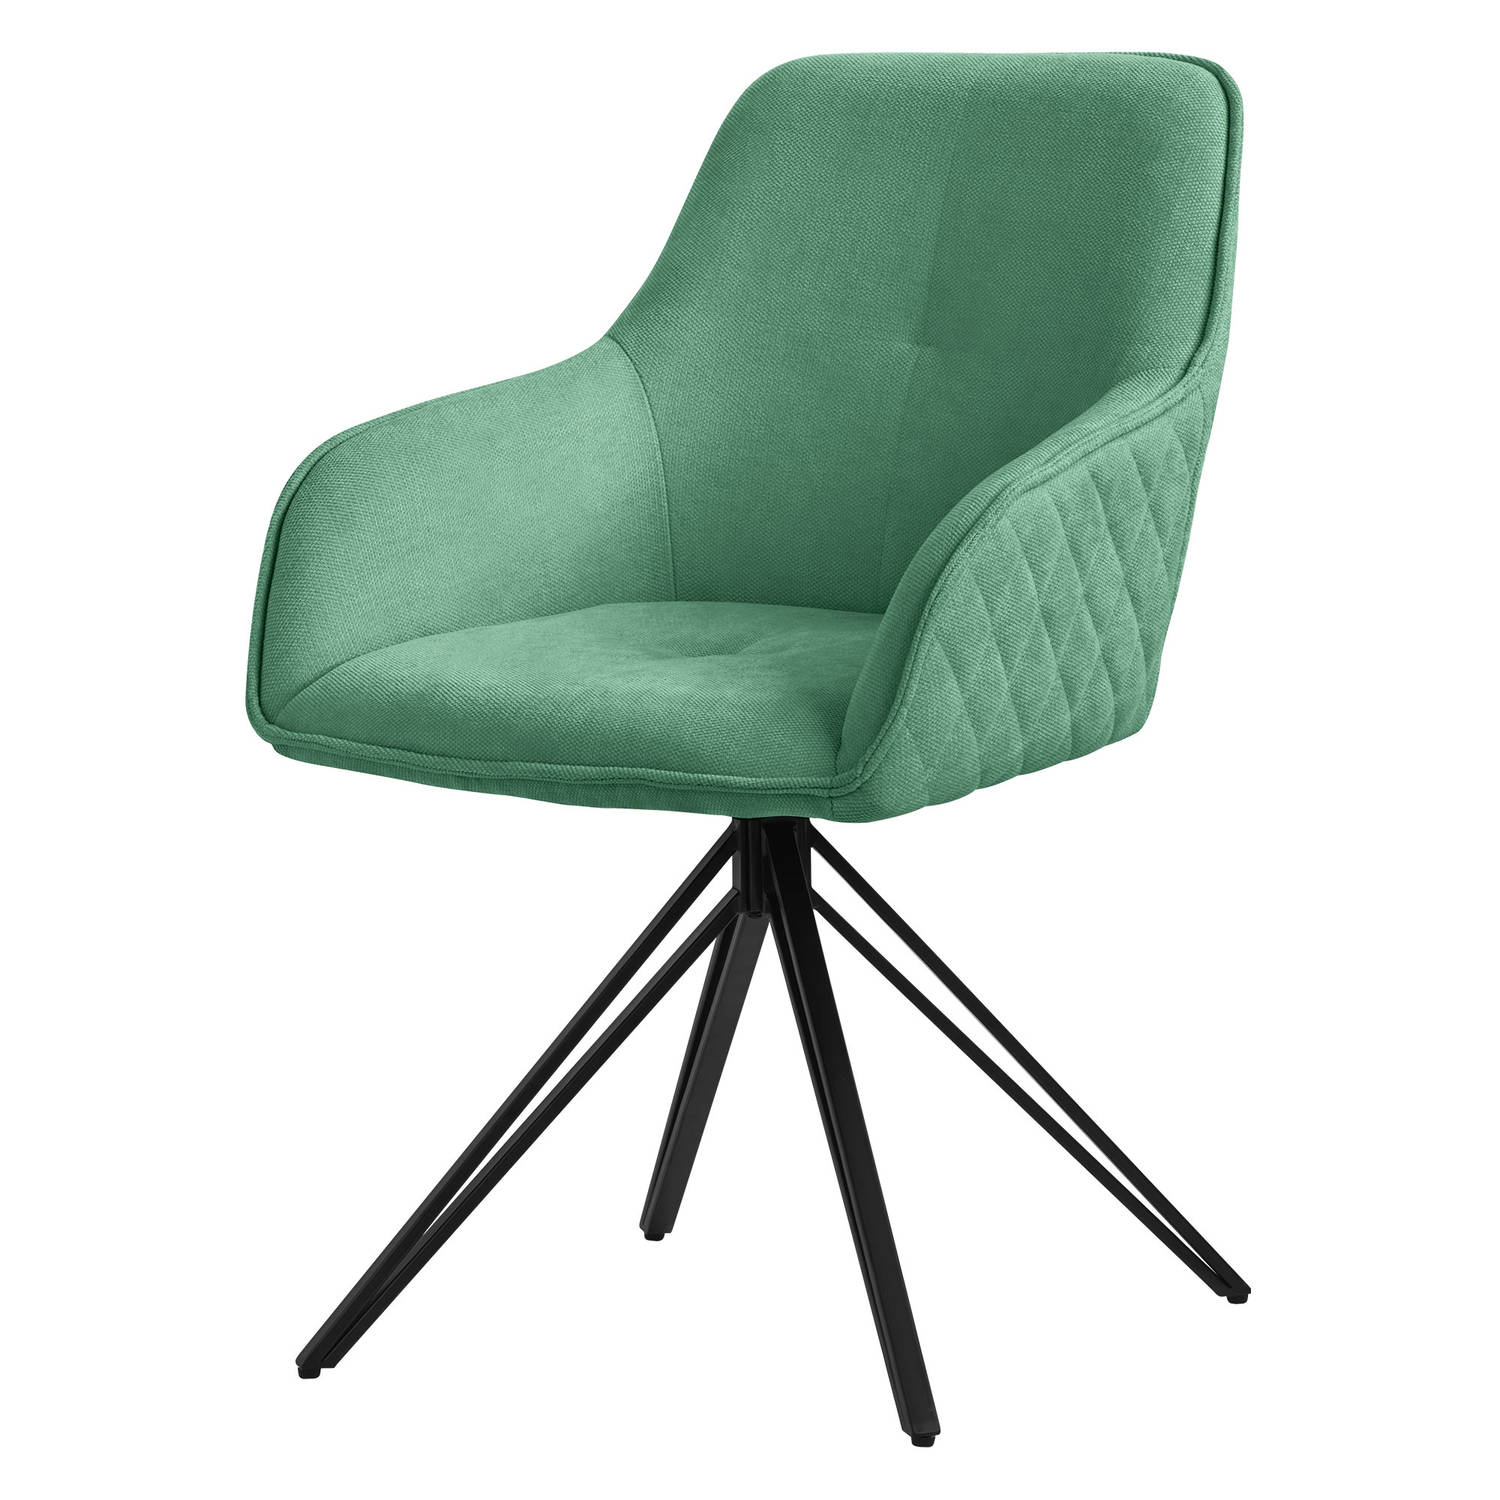 ML-Design eetkamerstoel draaibaar van textiel geweven stof, groen, woonkamerstoel met armleuning & rugleuning, 360° draaibare stoel, gestoffeerde stoel met metalen poten, ergonomis